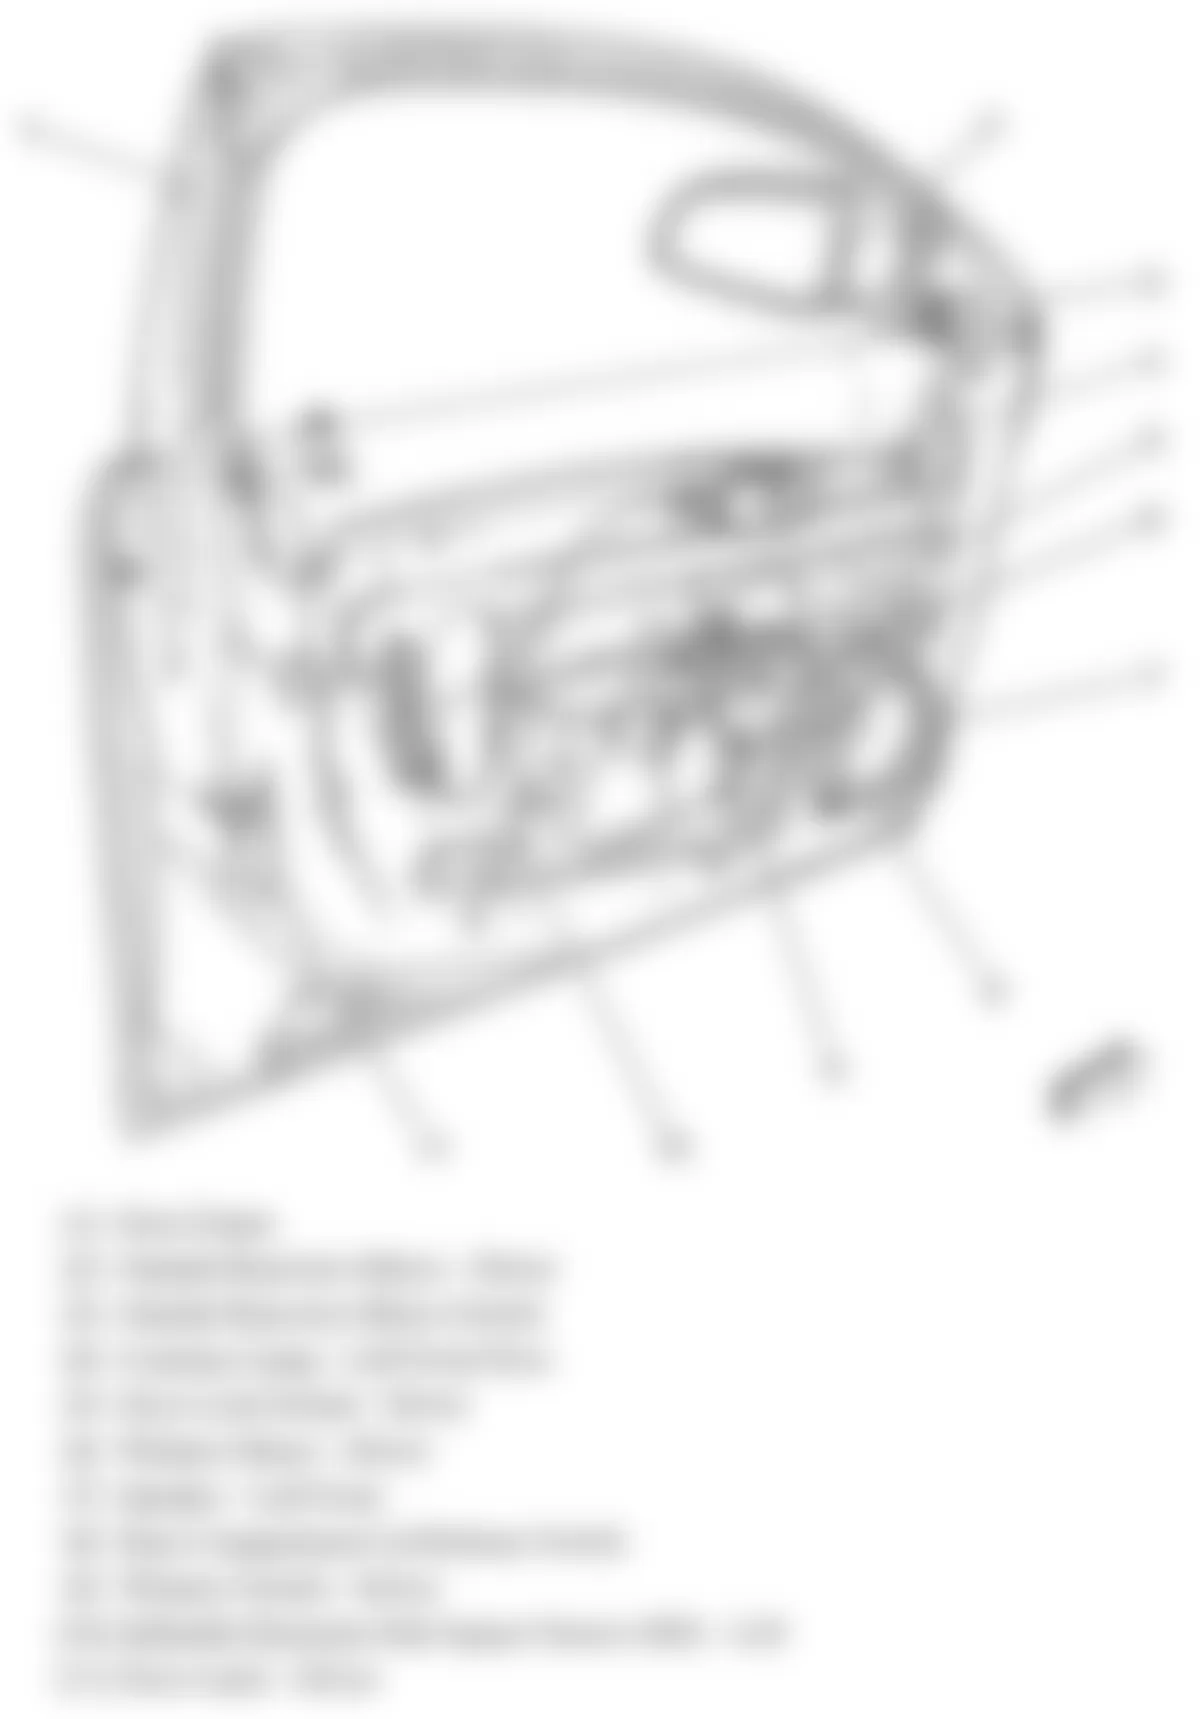 Chevrolet Malibu LTZ 2008 - Component Locations -  Drivers Door